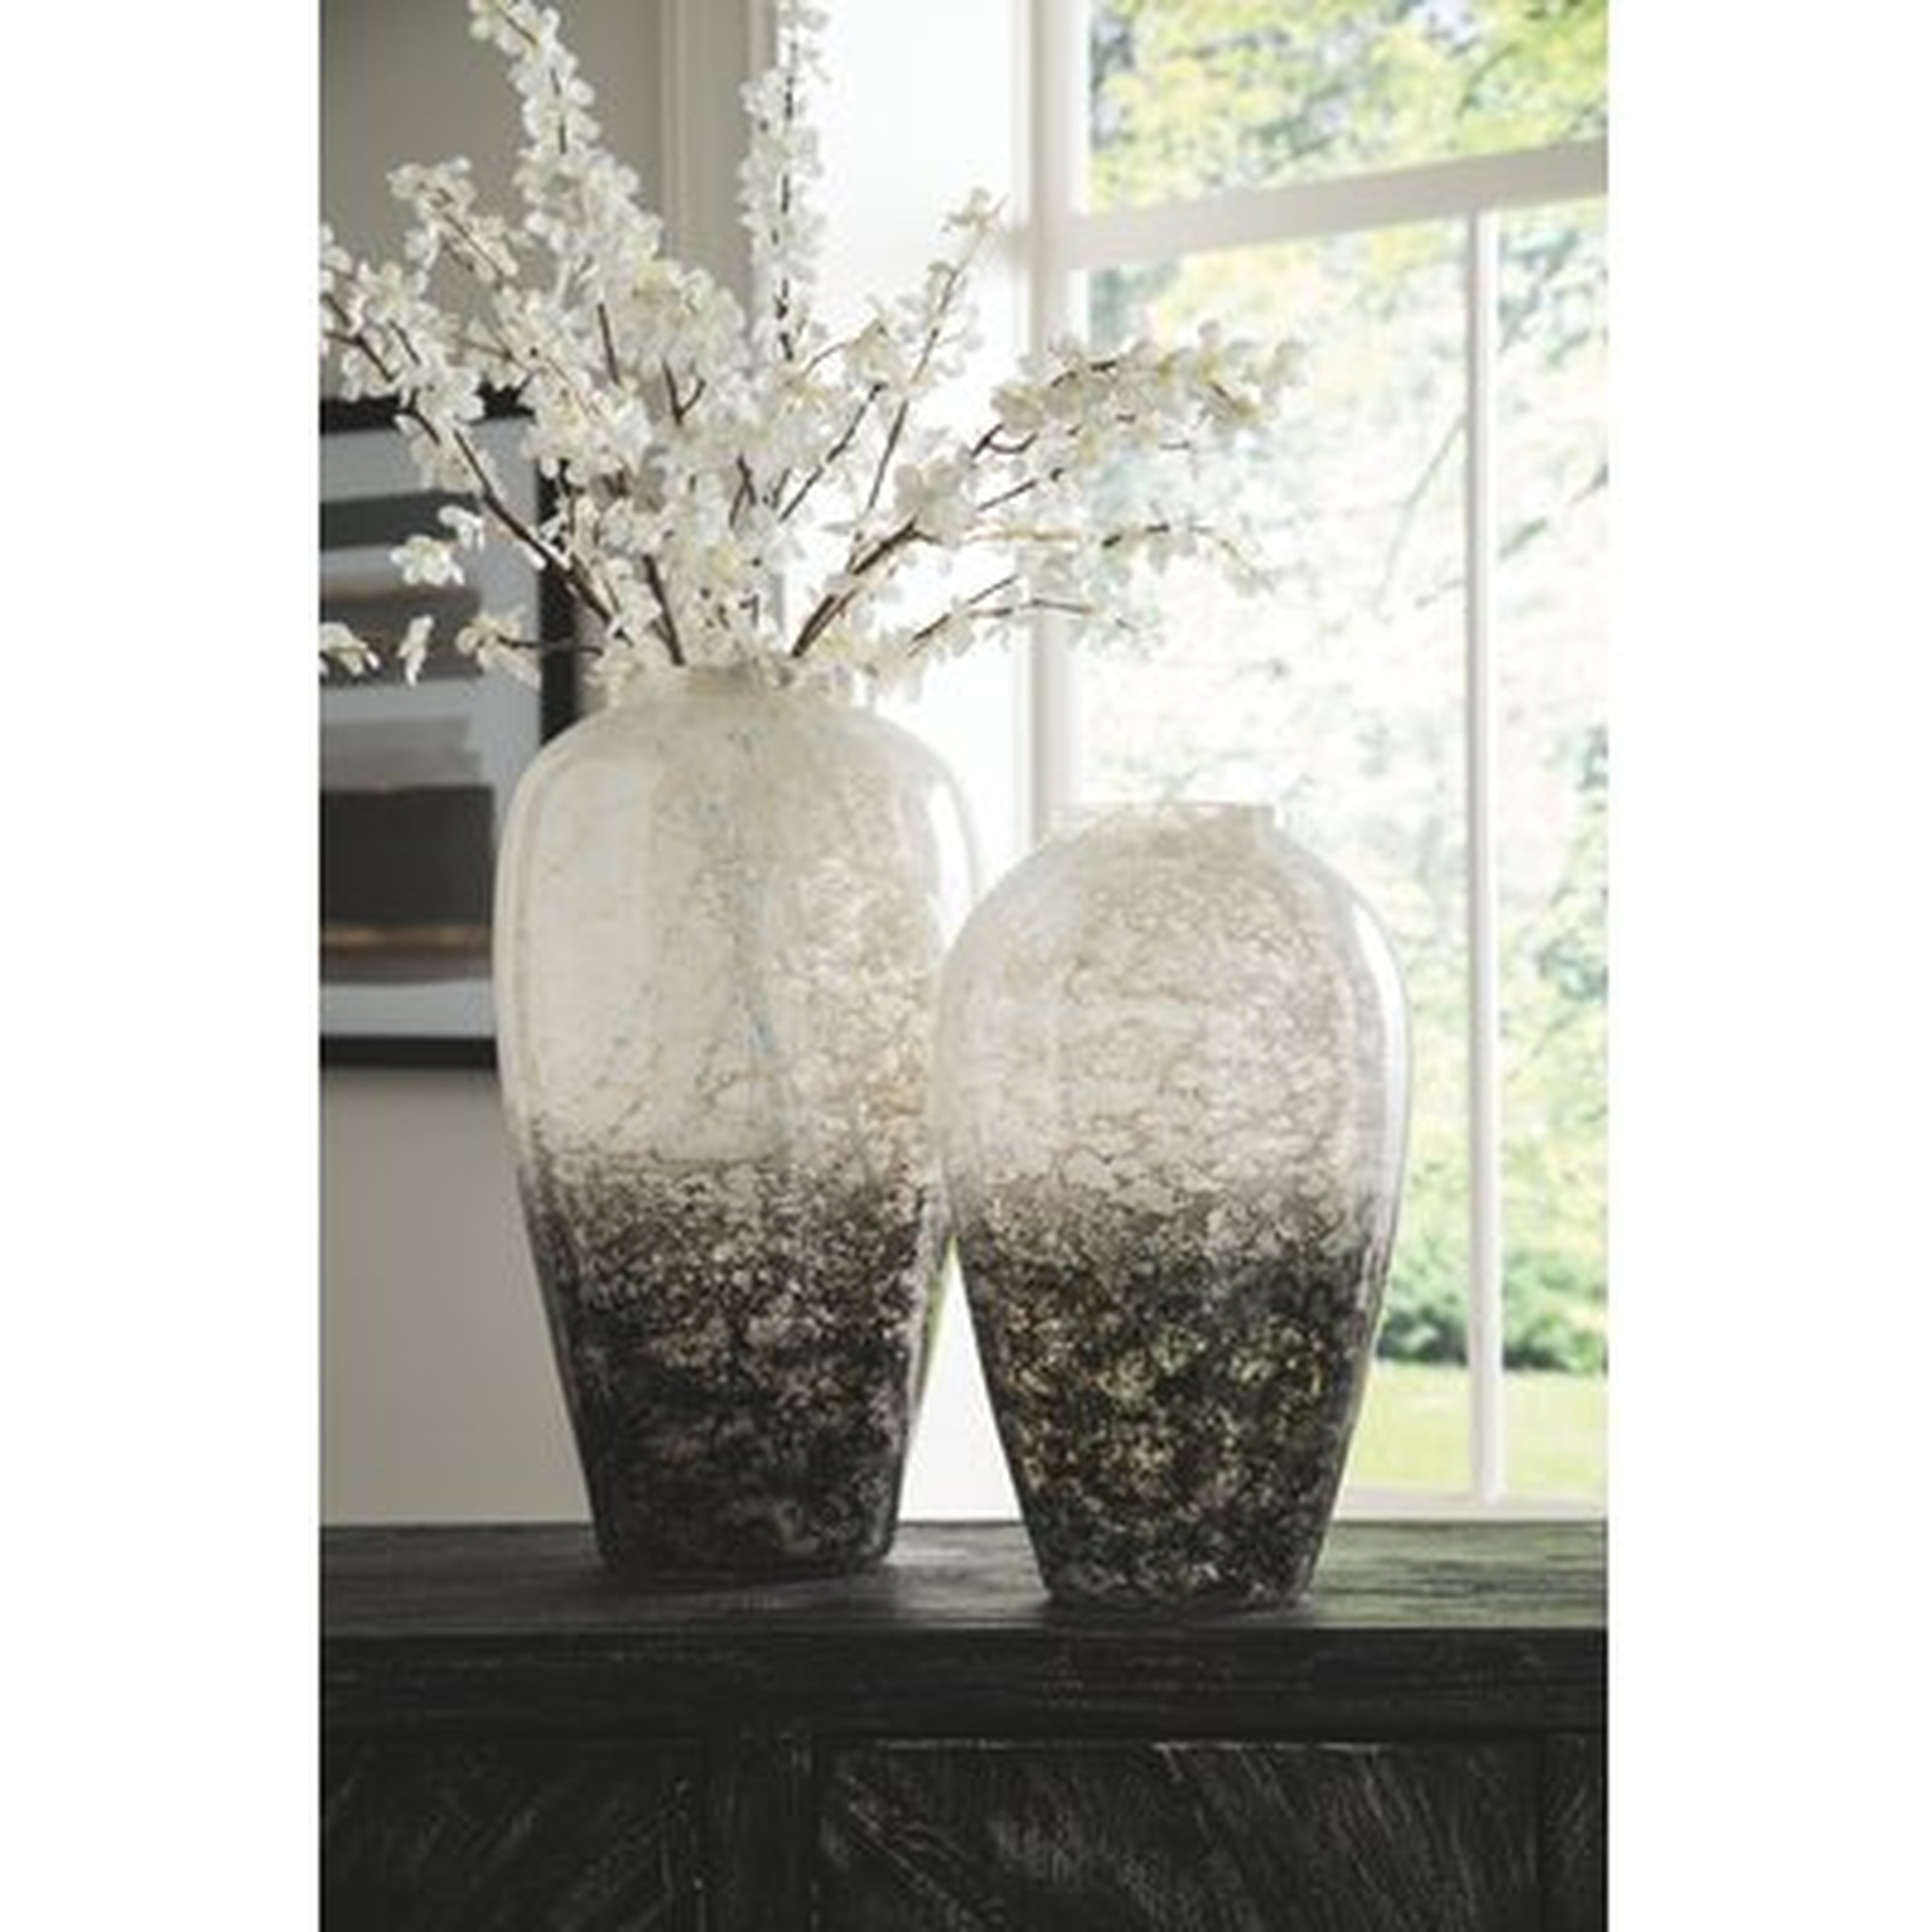 2 Piece Black/White Glass Table Vase Set - Wayfair